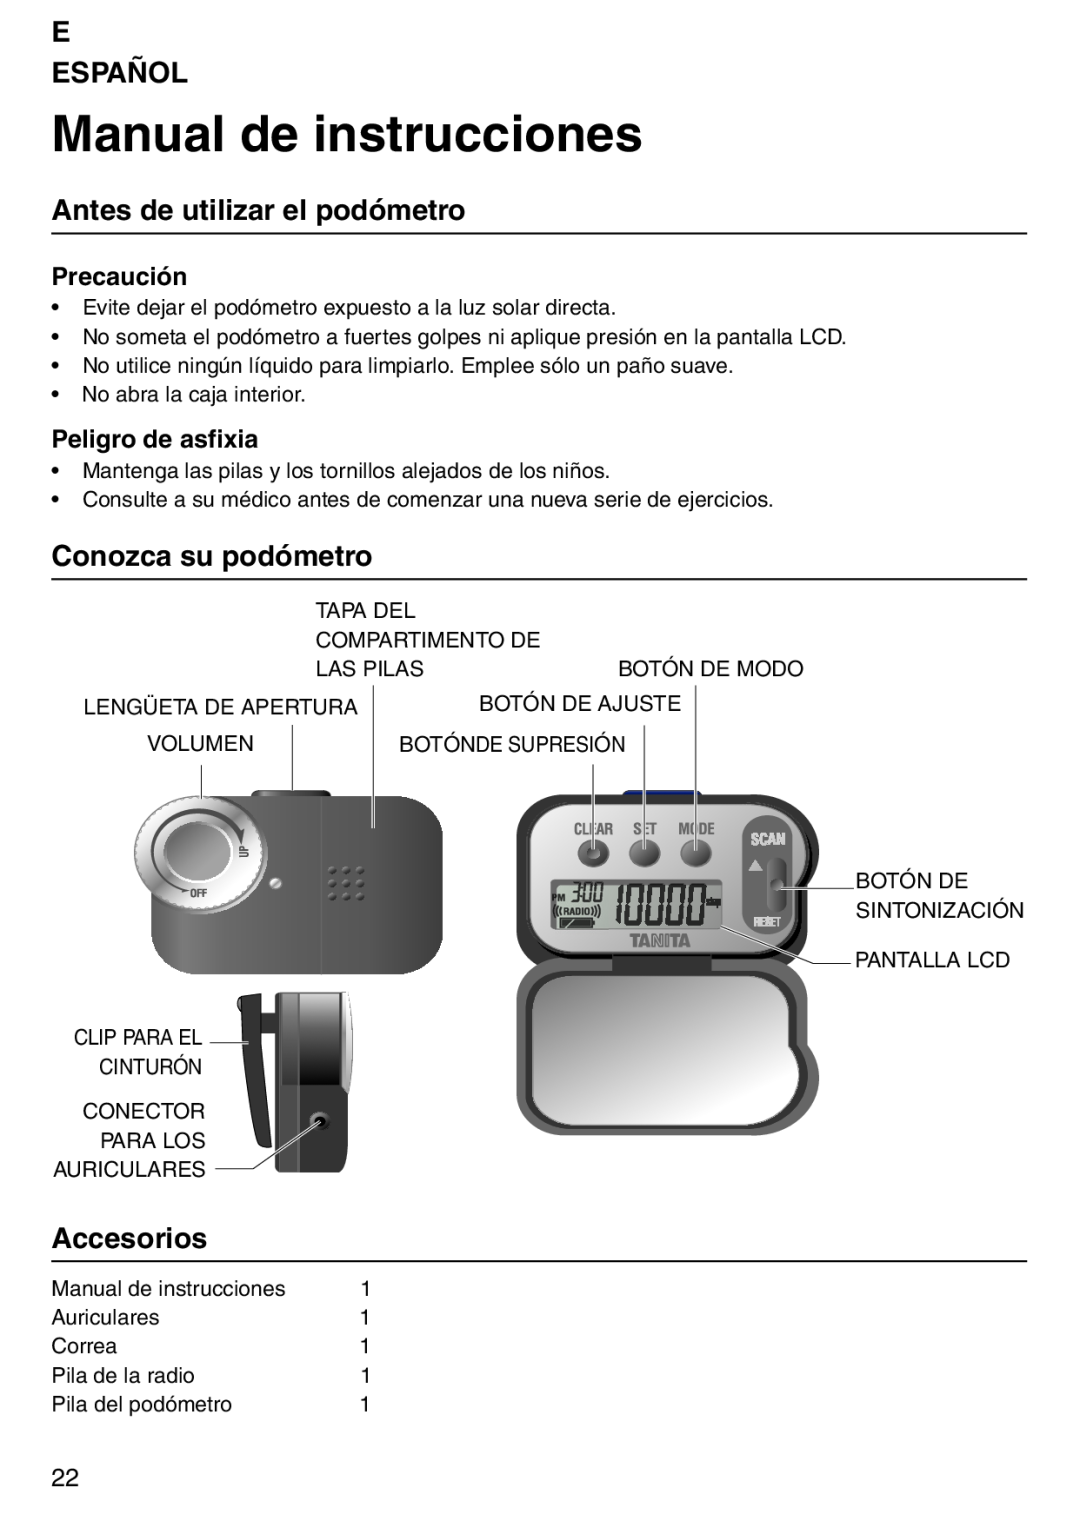 Tanita PD640 Manual de instrucciones, E Español, Antes de utilizar el podómetro, Conozca su podómetro, Accesorios 